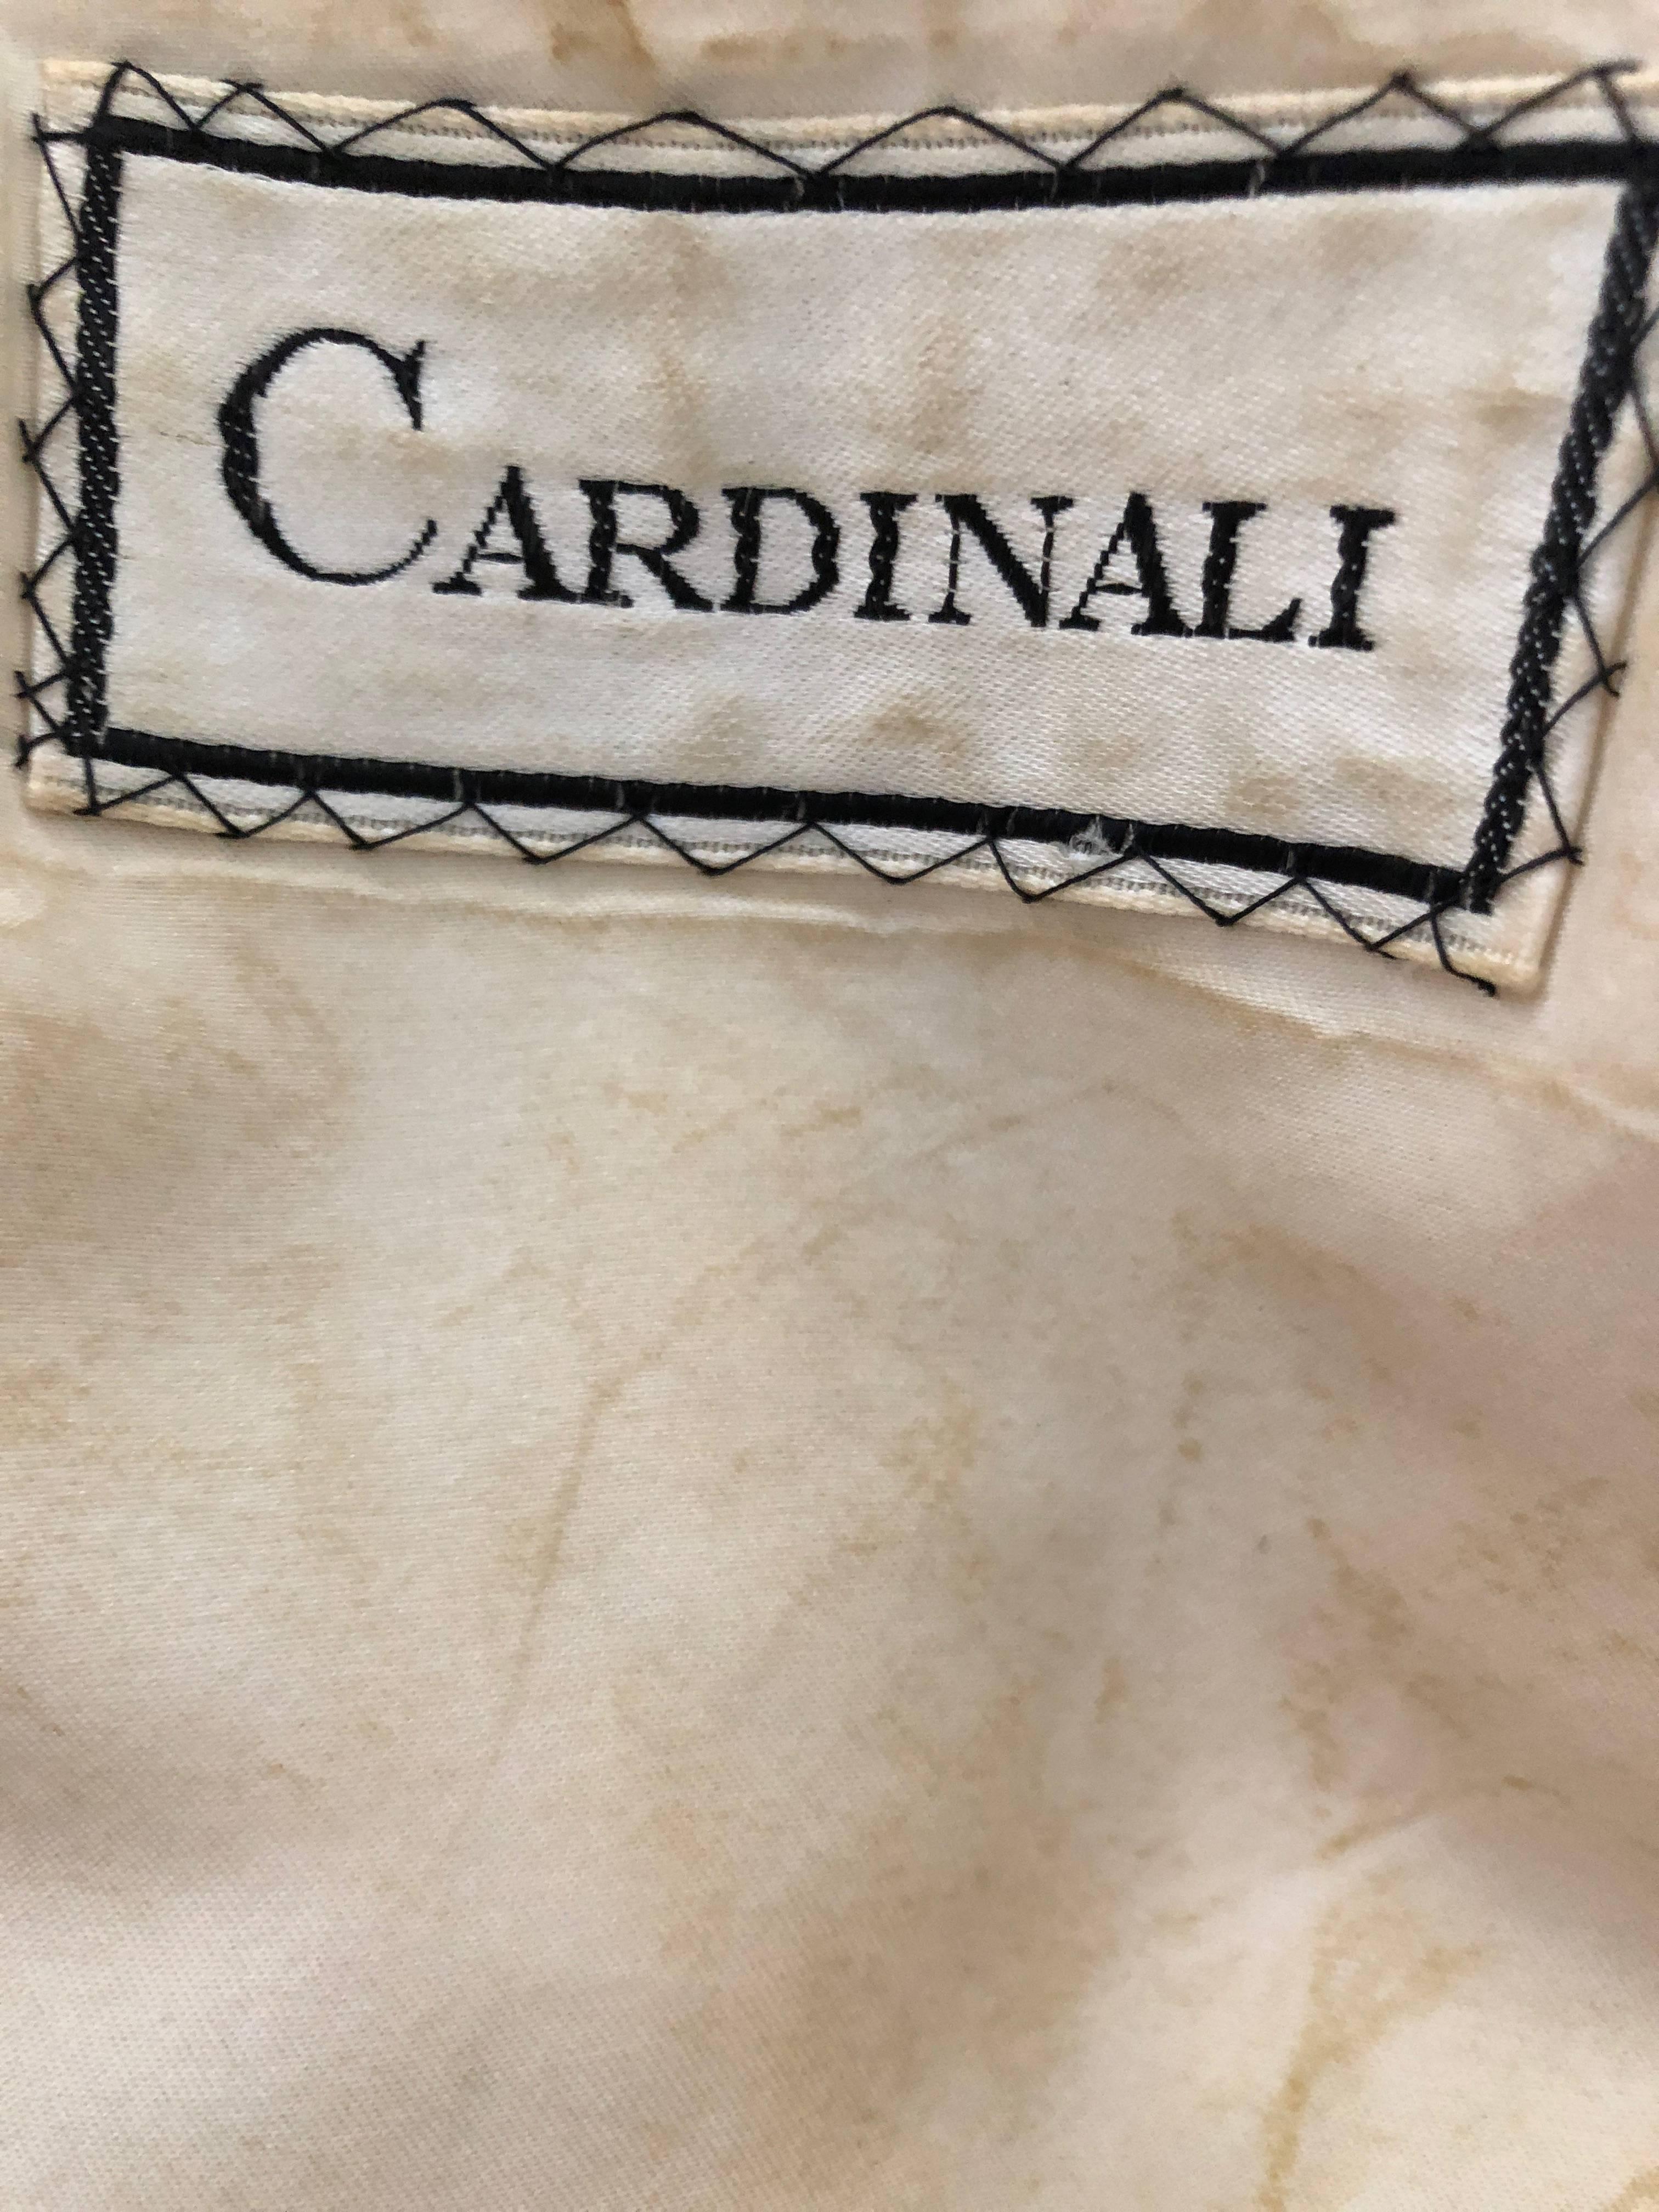 Cardinali Arabesque Crystal Embellished Evening Coat Dress 1970  For Sale 11